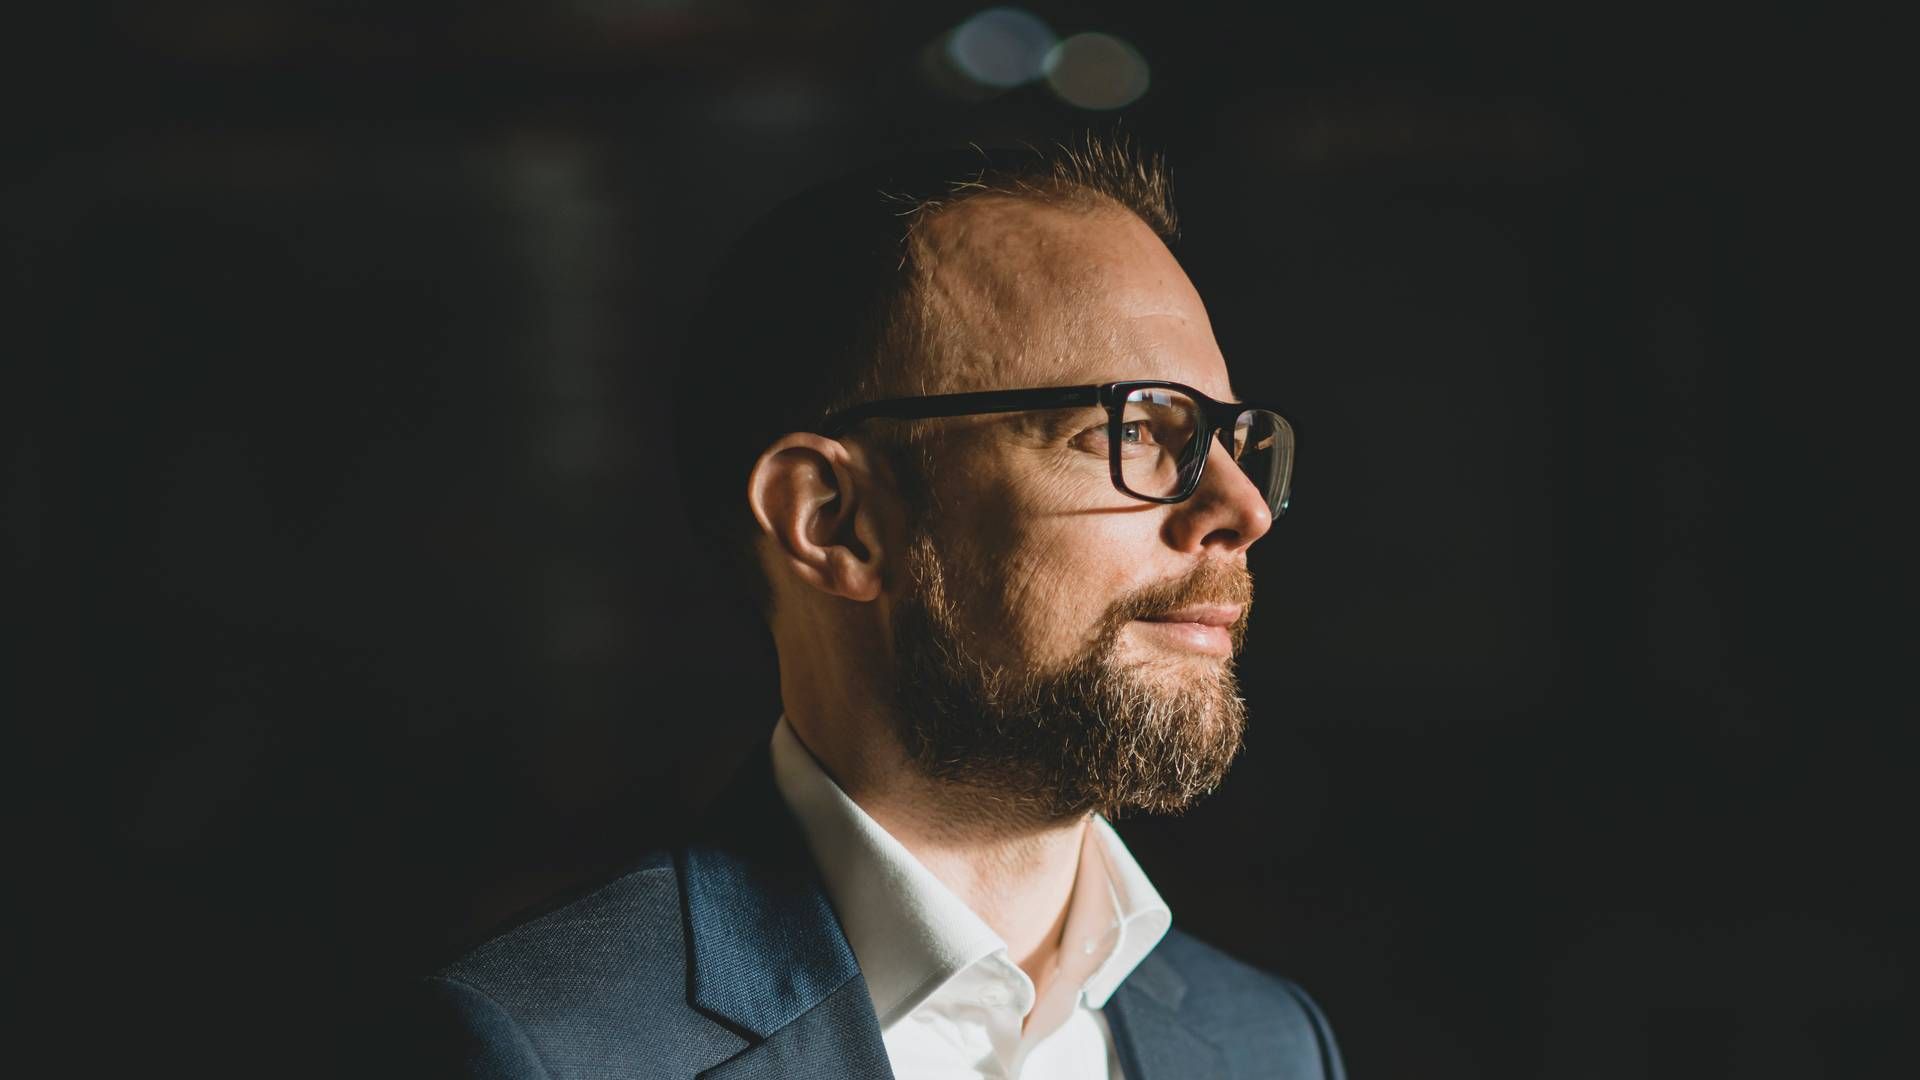 Kræn Østergaard Nielsen har siden 2020 været adm. direktør for Coop Danmark og har været i Coop siden 2015, hvor han startede som teknologidirektør og siden blev finansdirektør inden udnævnelsen som topchef. | Foto: Christian Als/coop/pr